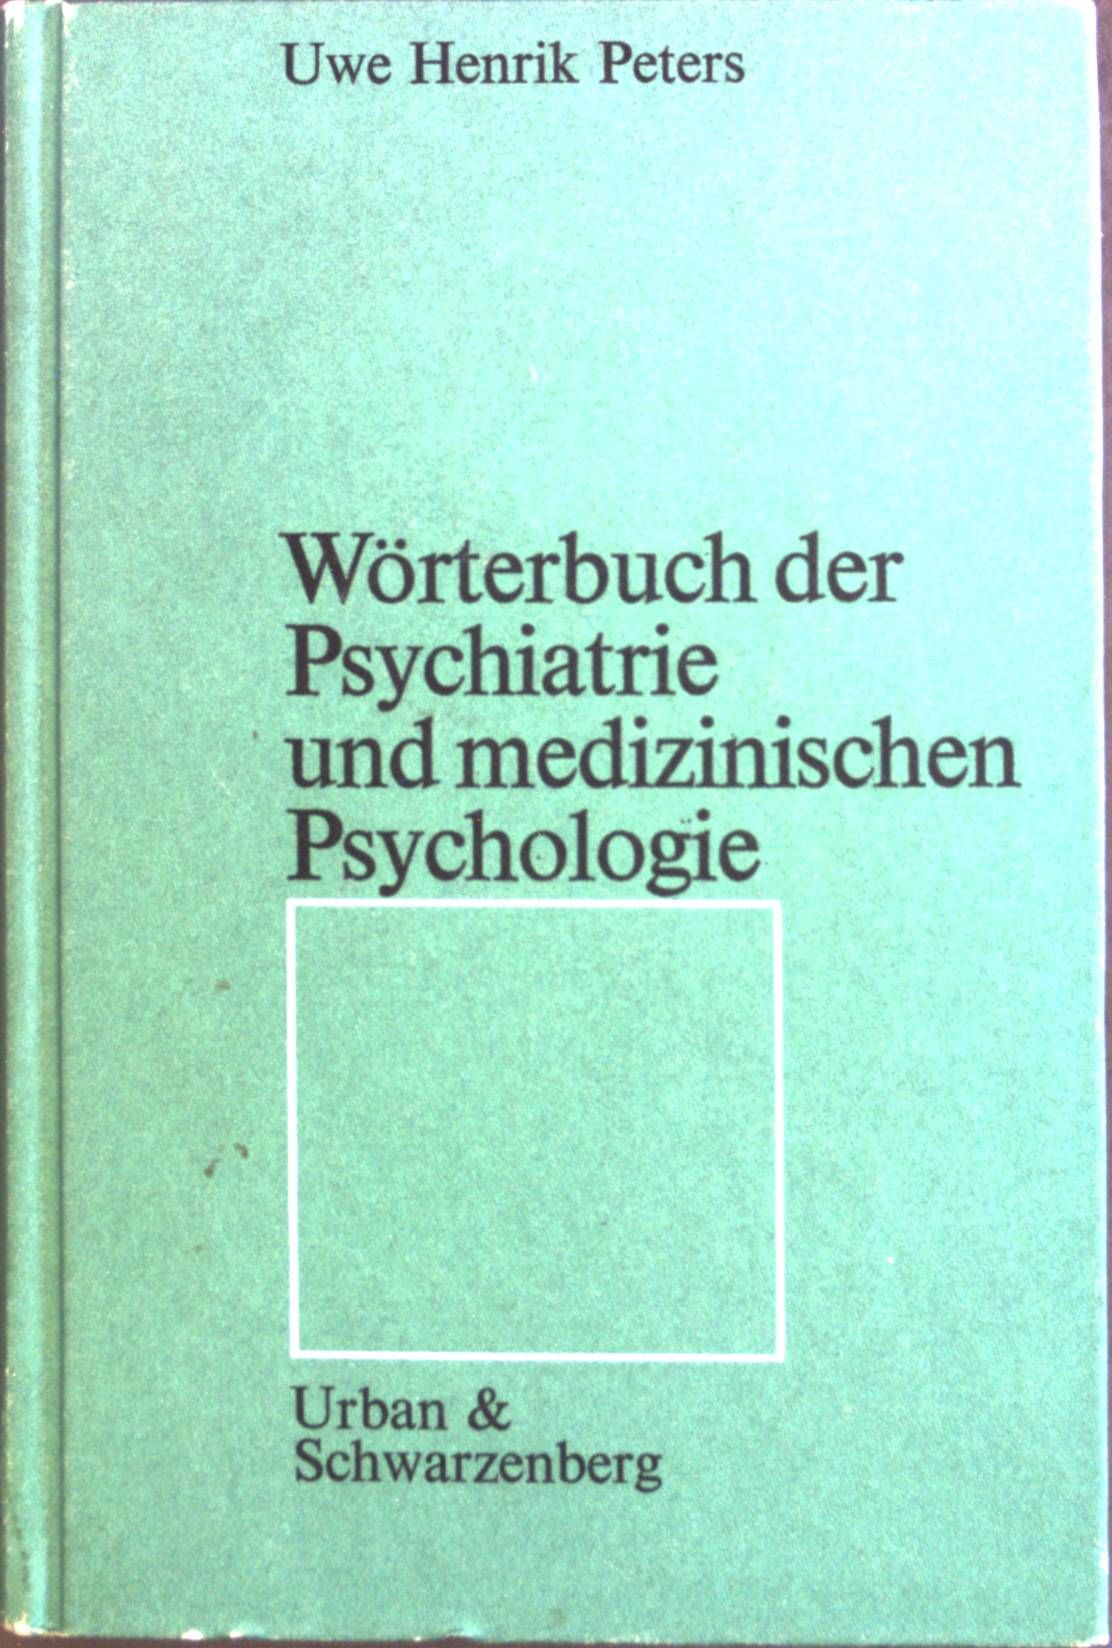 Wörterbuch der Psychiatrie und medizinischen Psychologie. - Peters, Uwe Henrik